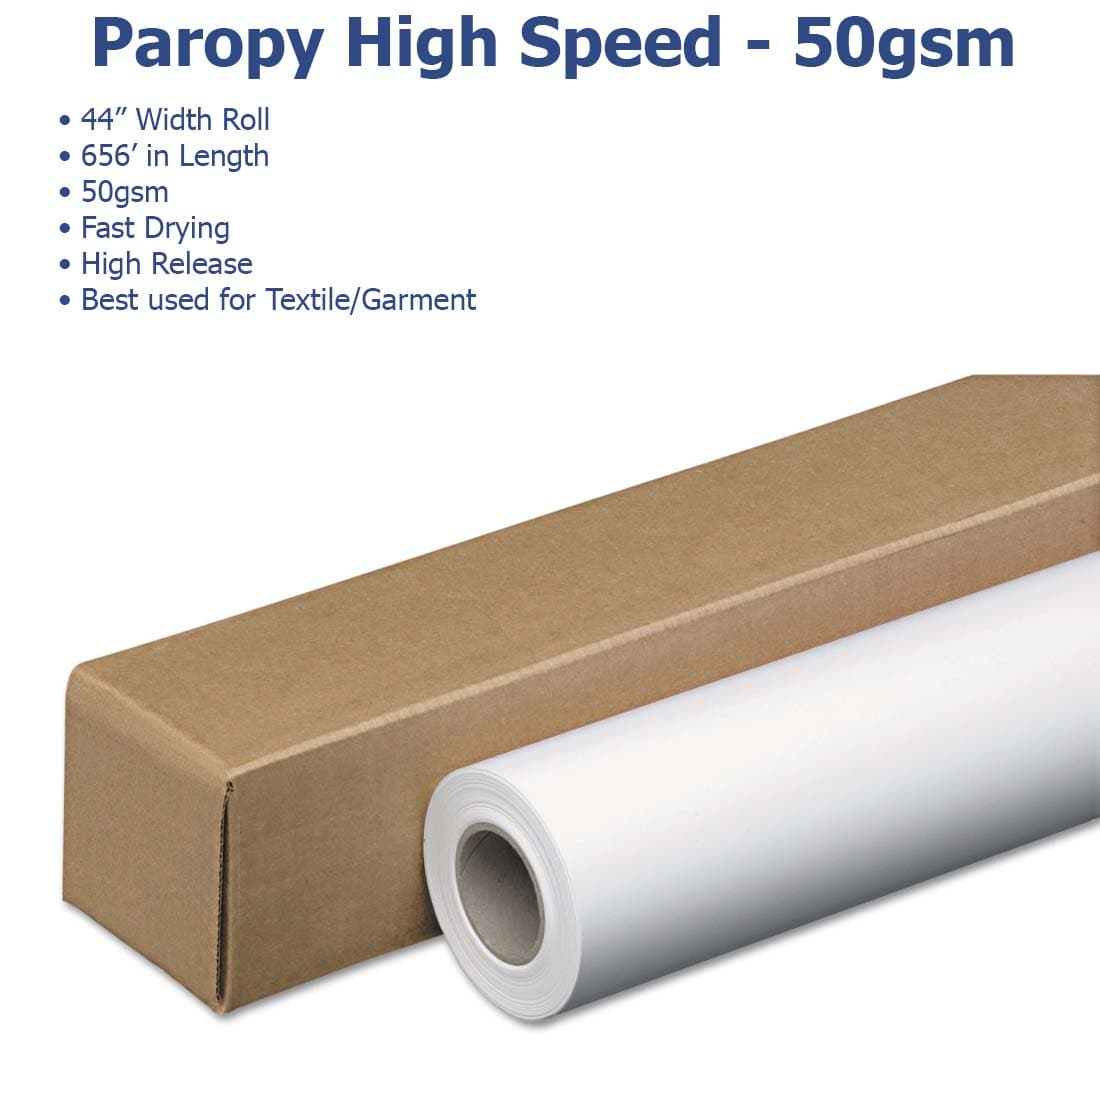 Paropy™ Sublimation Paper - 50gsm - Joto Imaging Supplies US